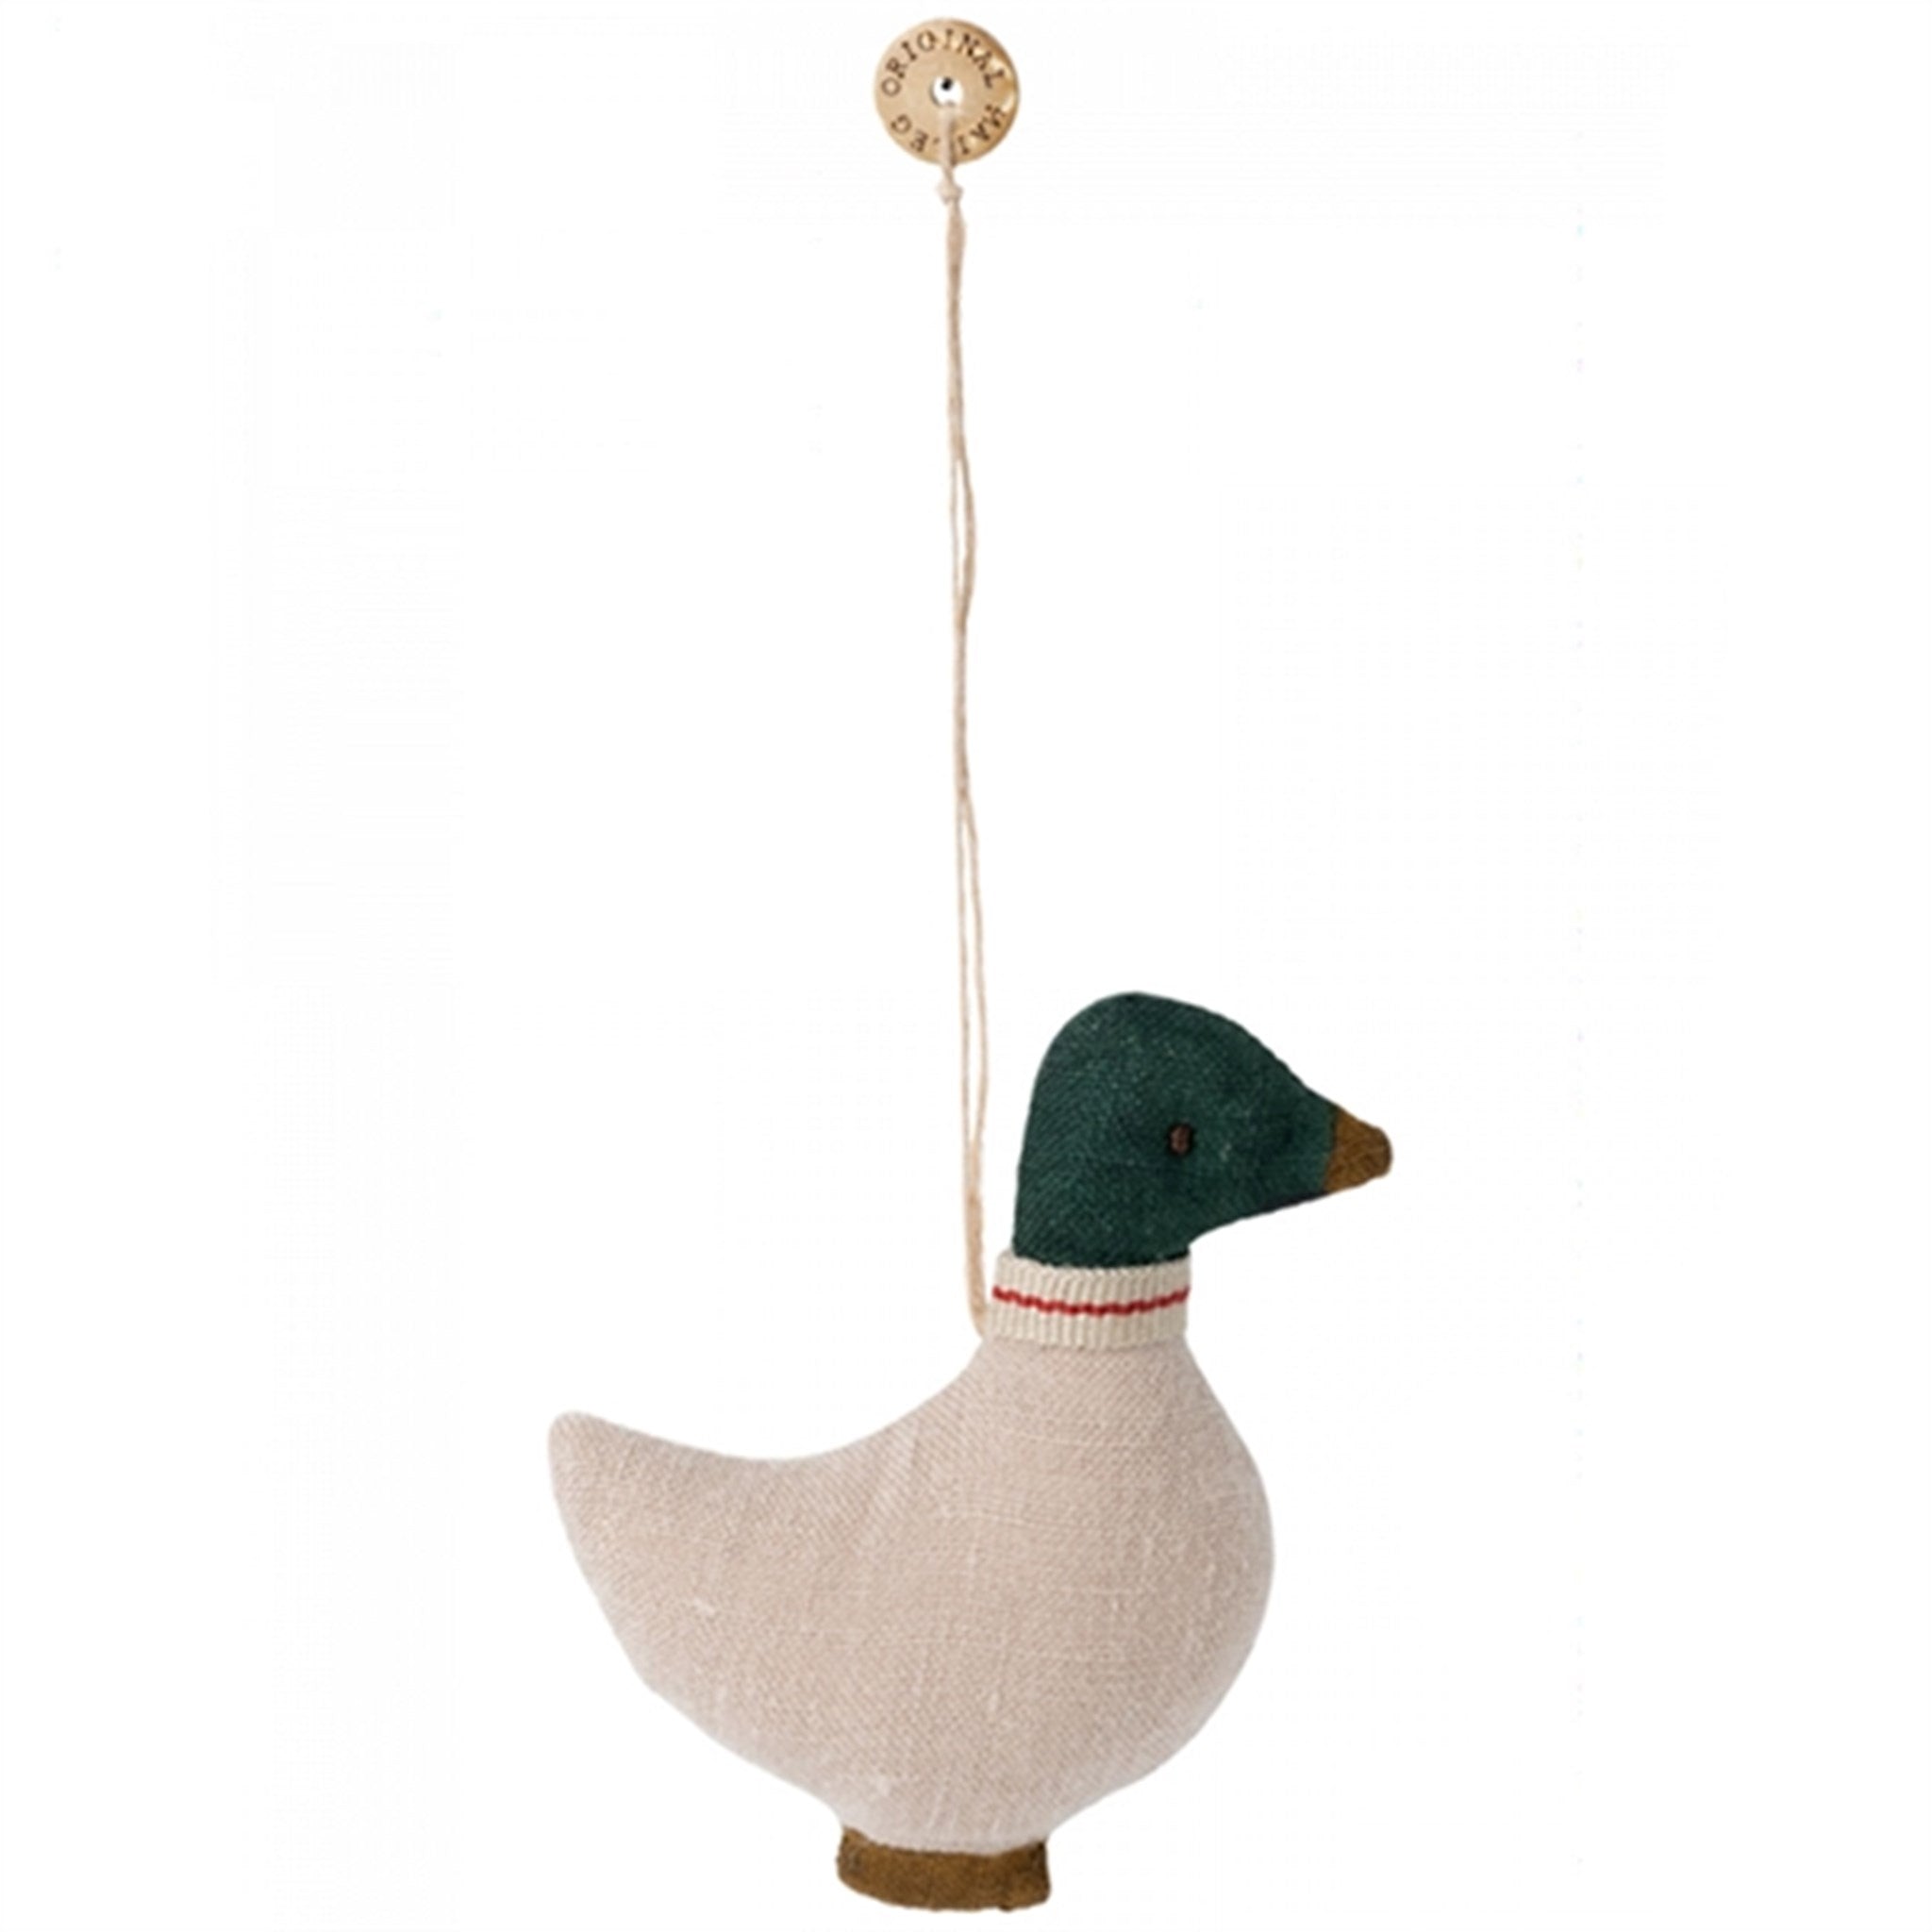 Maileg Duck Ornament, Green